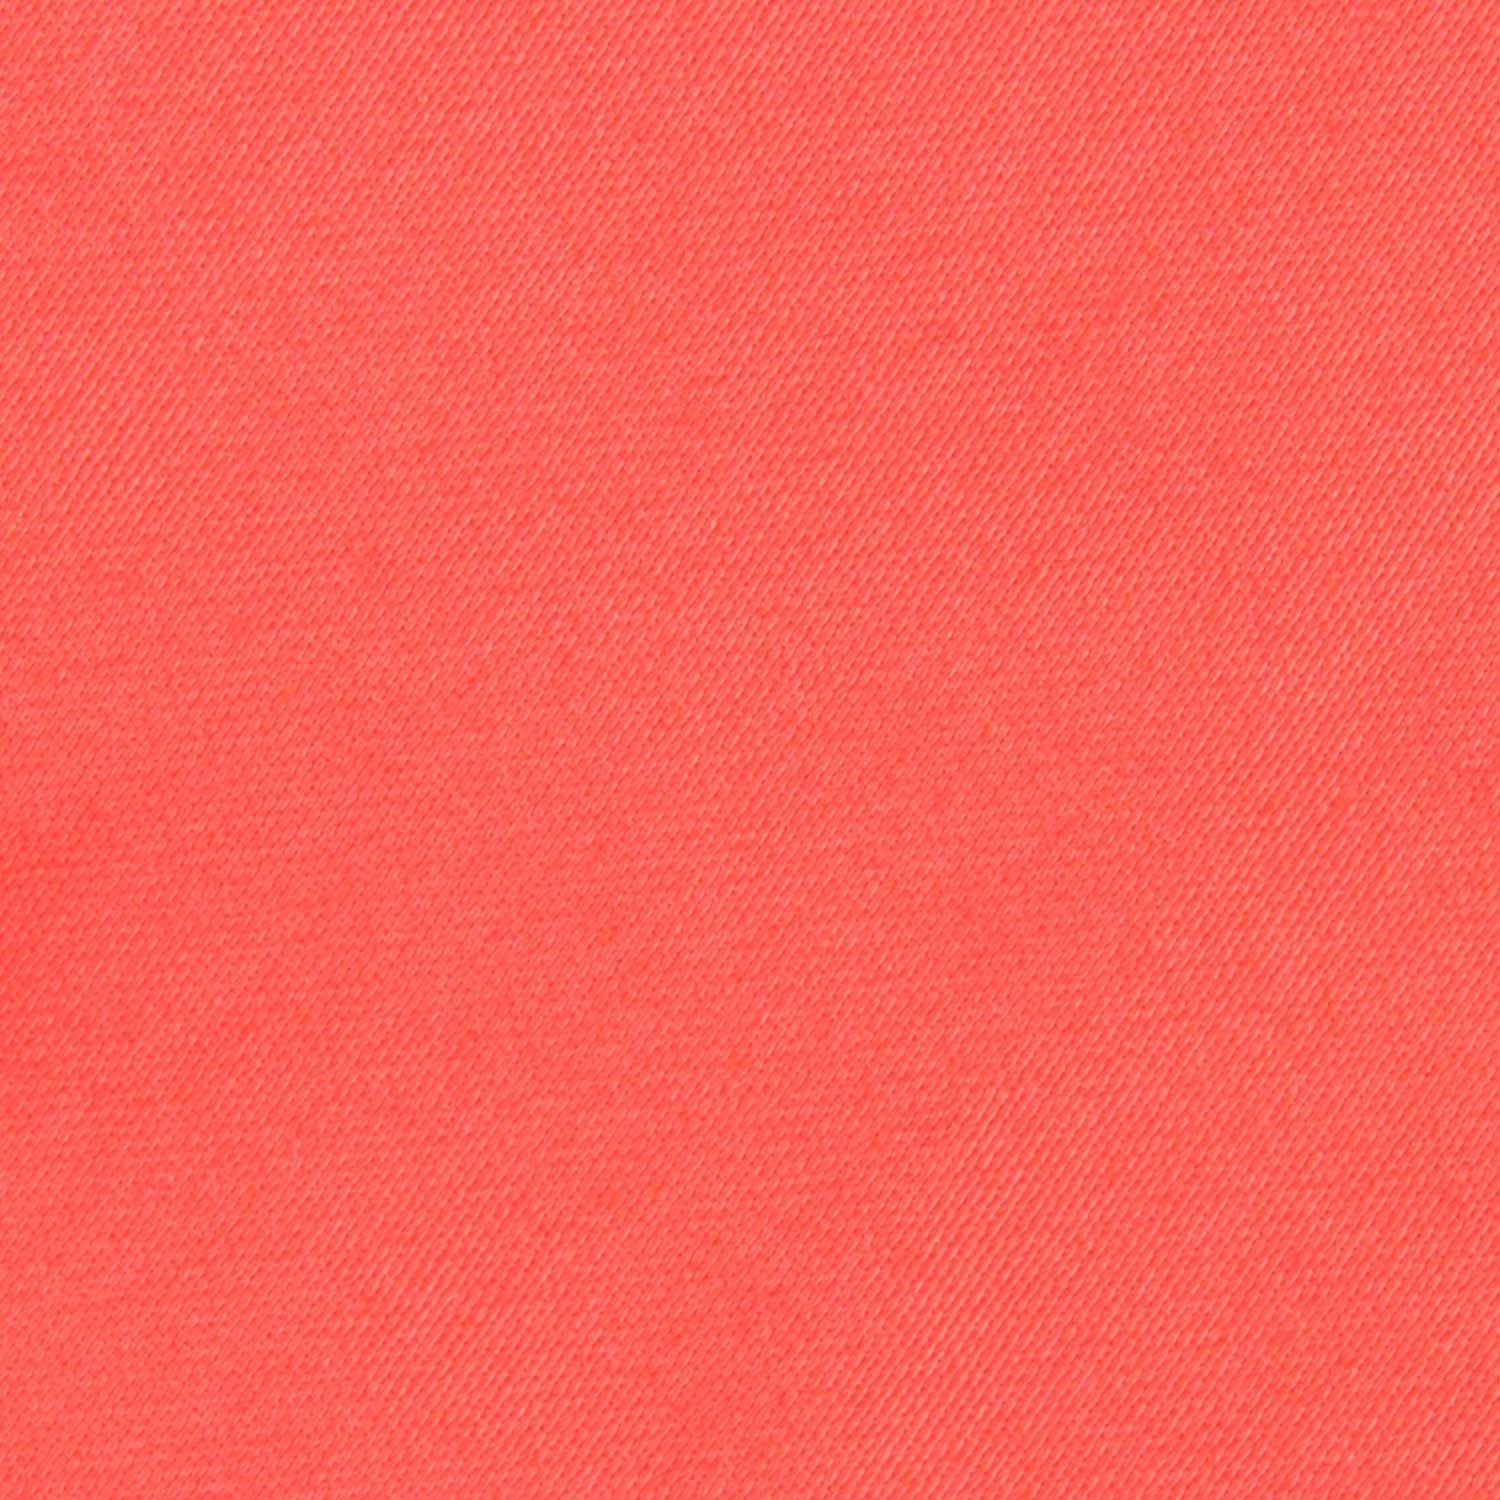 Coral Pink Cotton Fabric Necktie C161